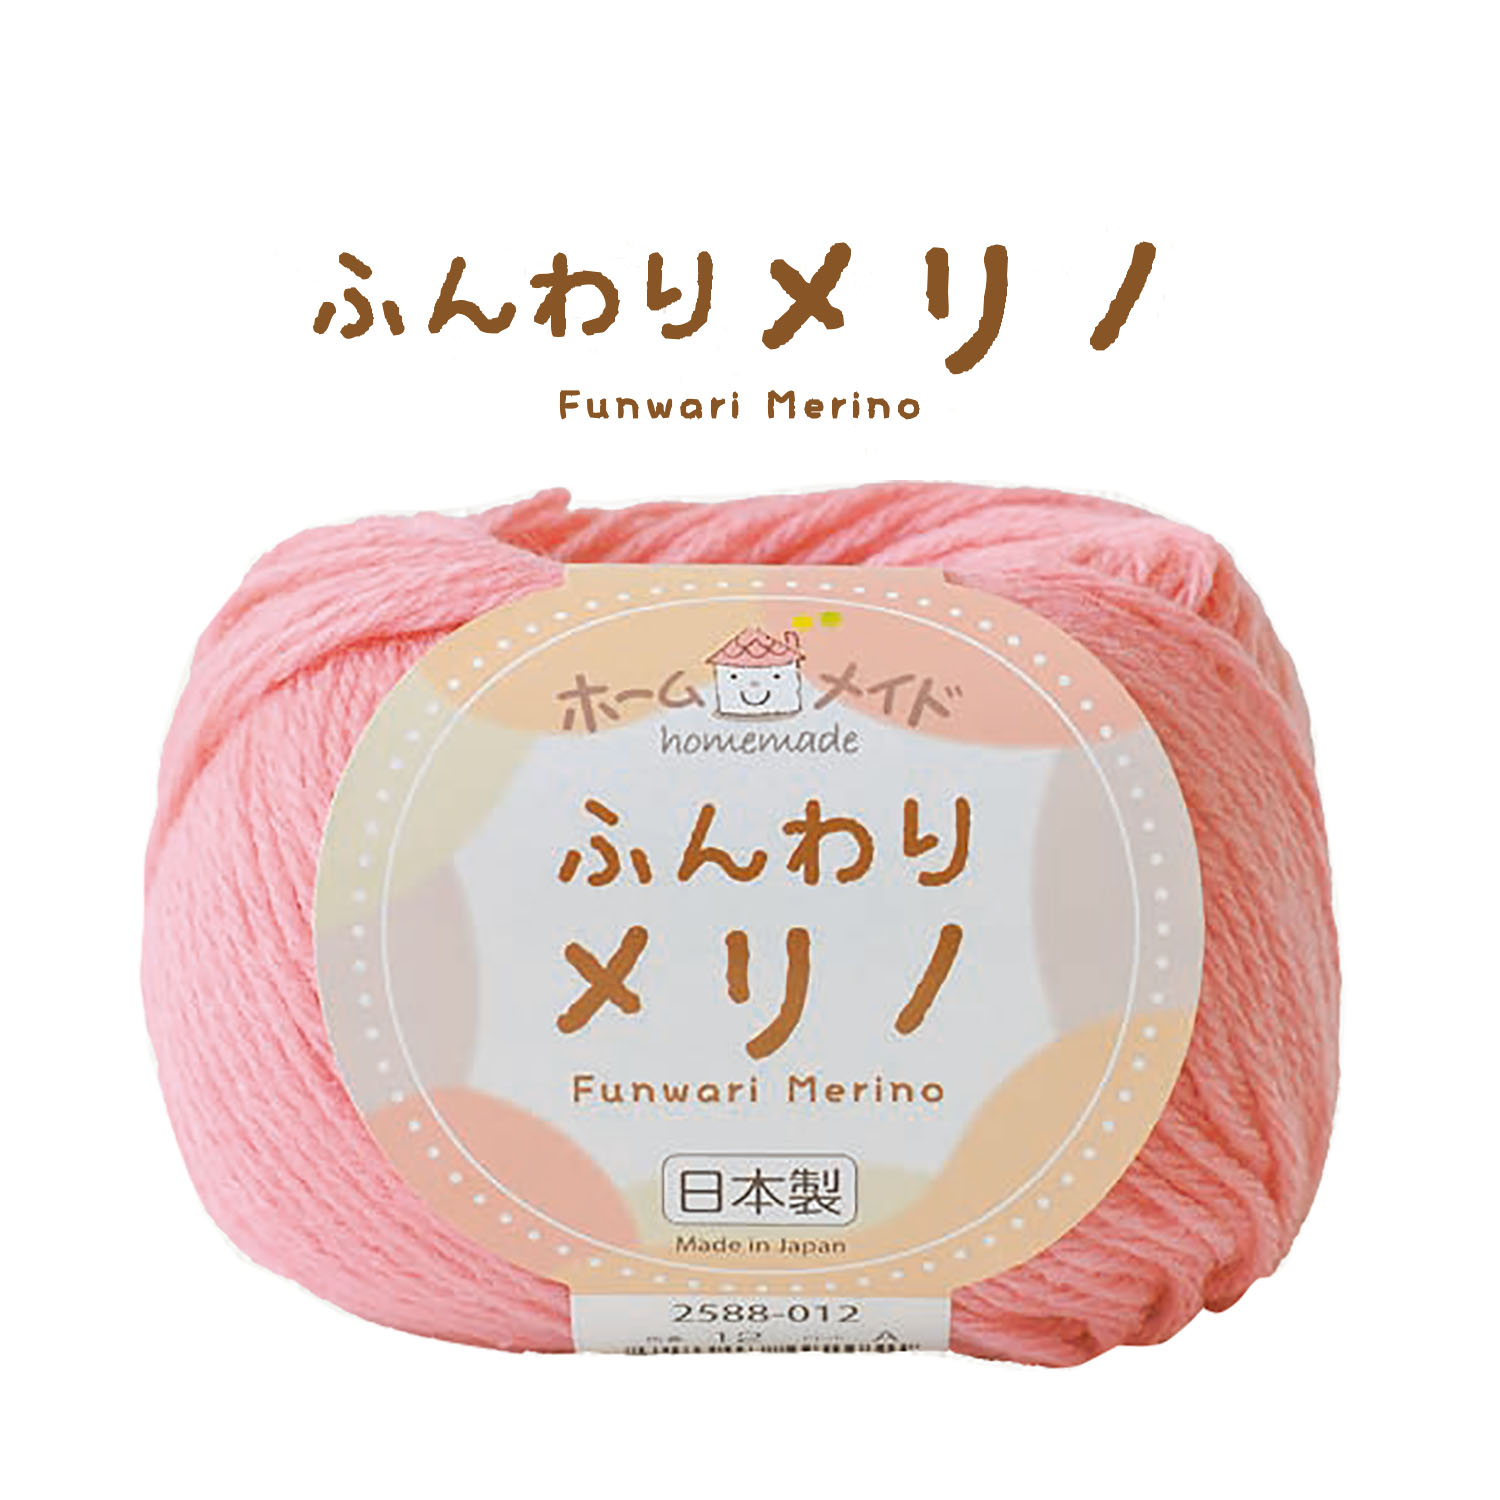 毛糸「手芸材料の卸売りサイトChuko Online」